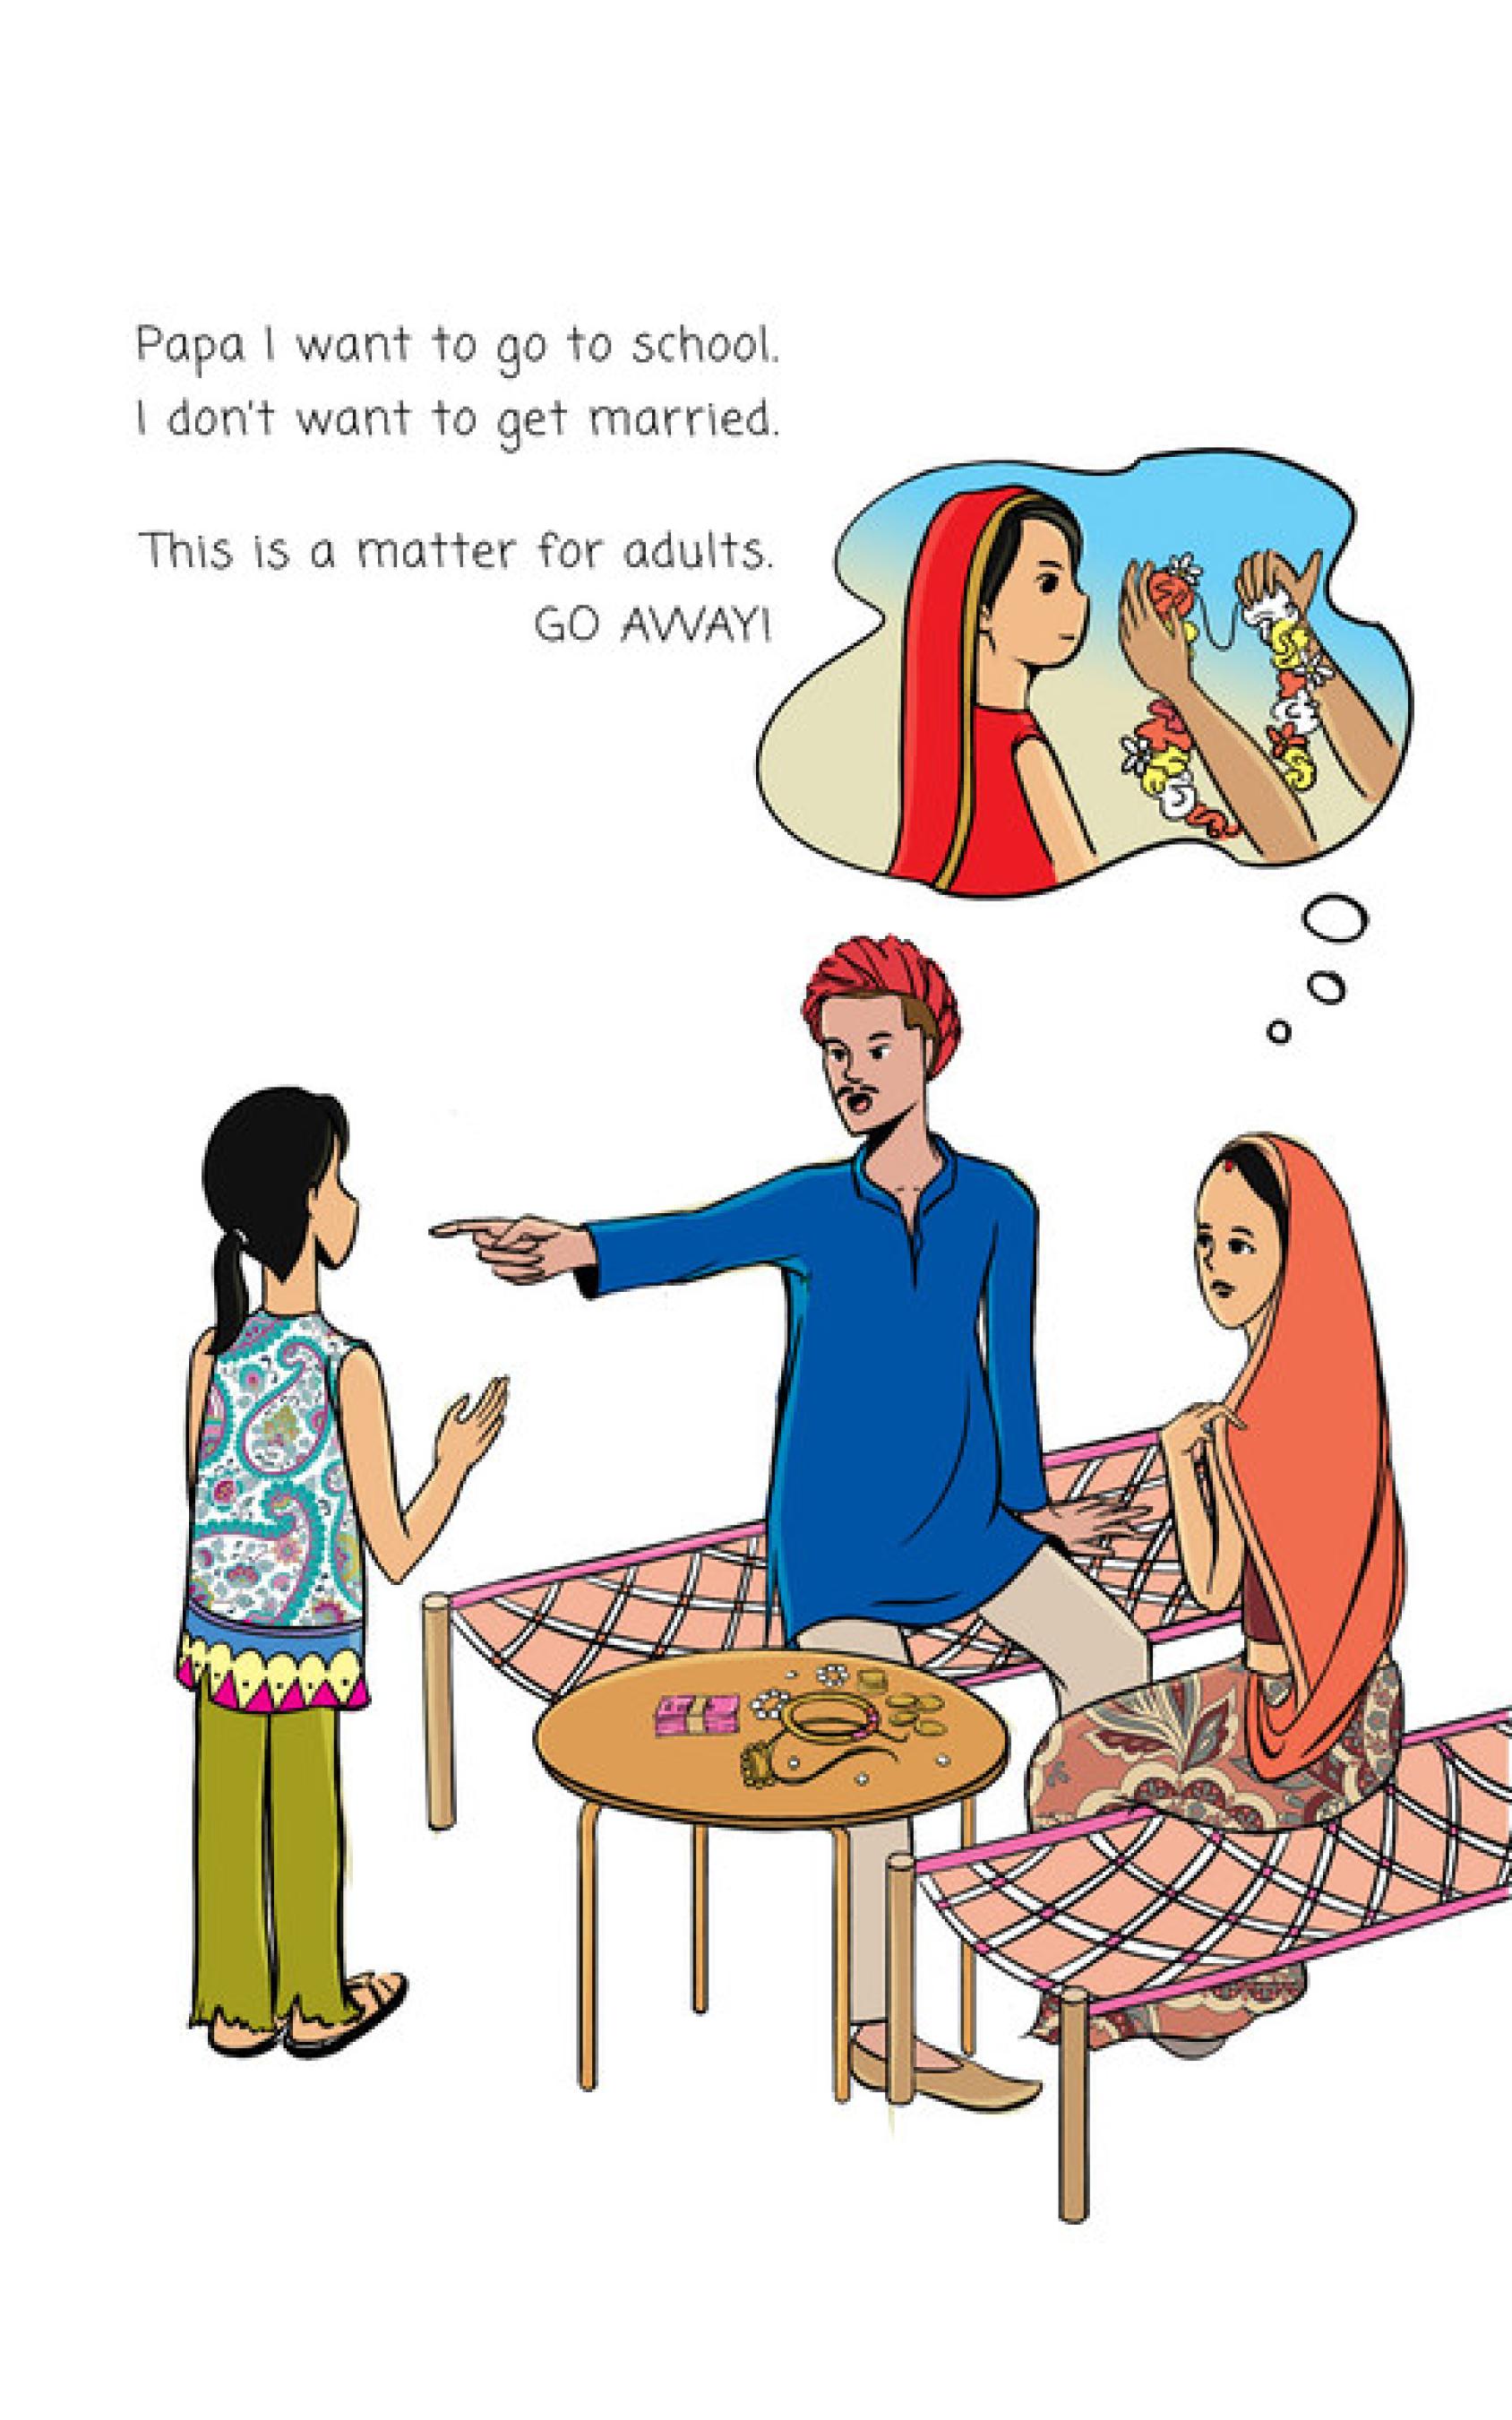 Extrait d'une bande dessinée montrant une famille indienne, le père pointant du doigt sa jeune fille et exigeant qu'elle se marie, et la mère écoutant en silence, alors que la jeune fille veut aller à l'école.